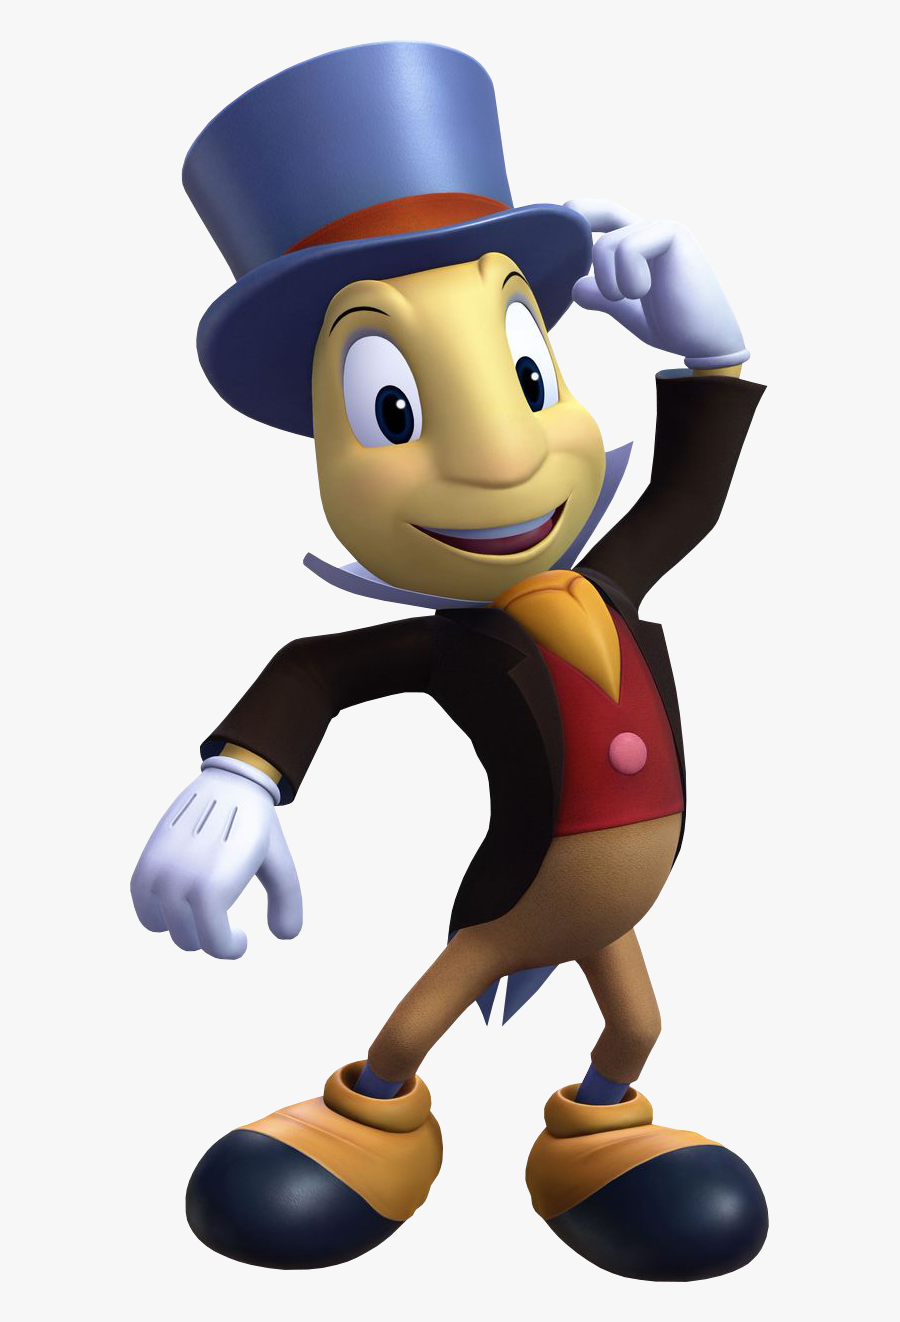 Jiminy Cricket Khiii - Jiminy Cricket Kingdom Hearts 3, Transparent Clipart